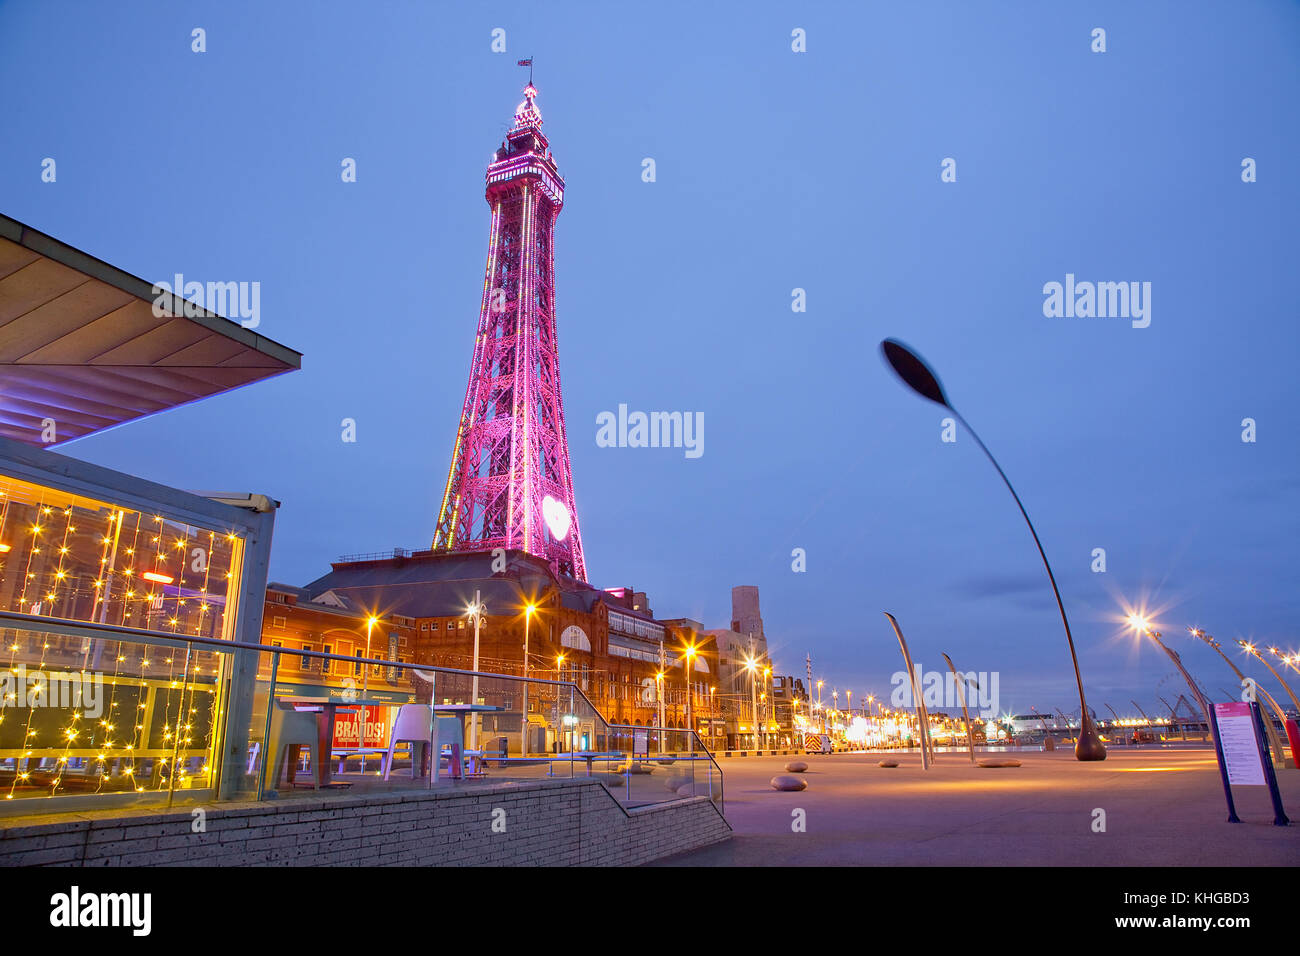 L'Angleterre, dans le Lancashire, Blackpool, promenade du front de mer avec tour illuminée au crépuscule. Banque D'Images